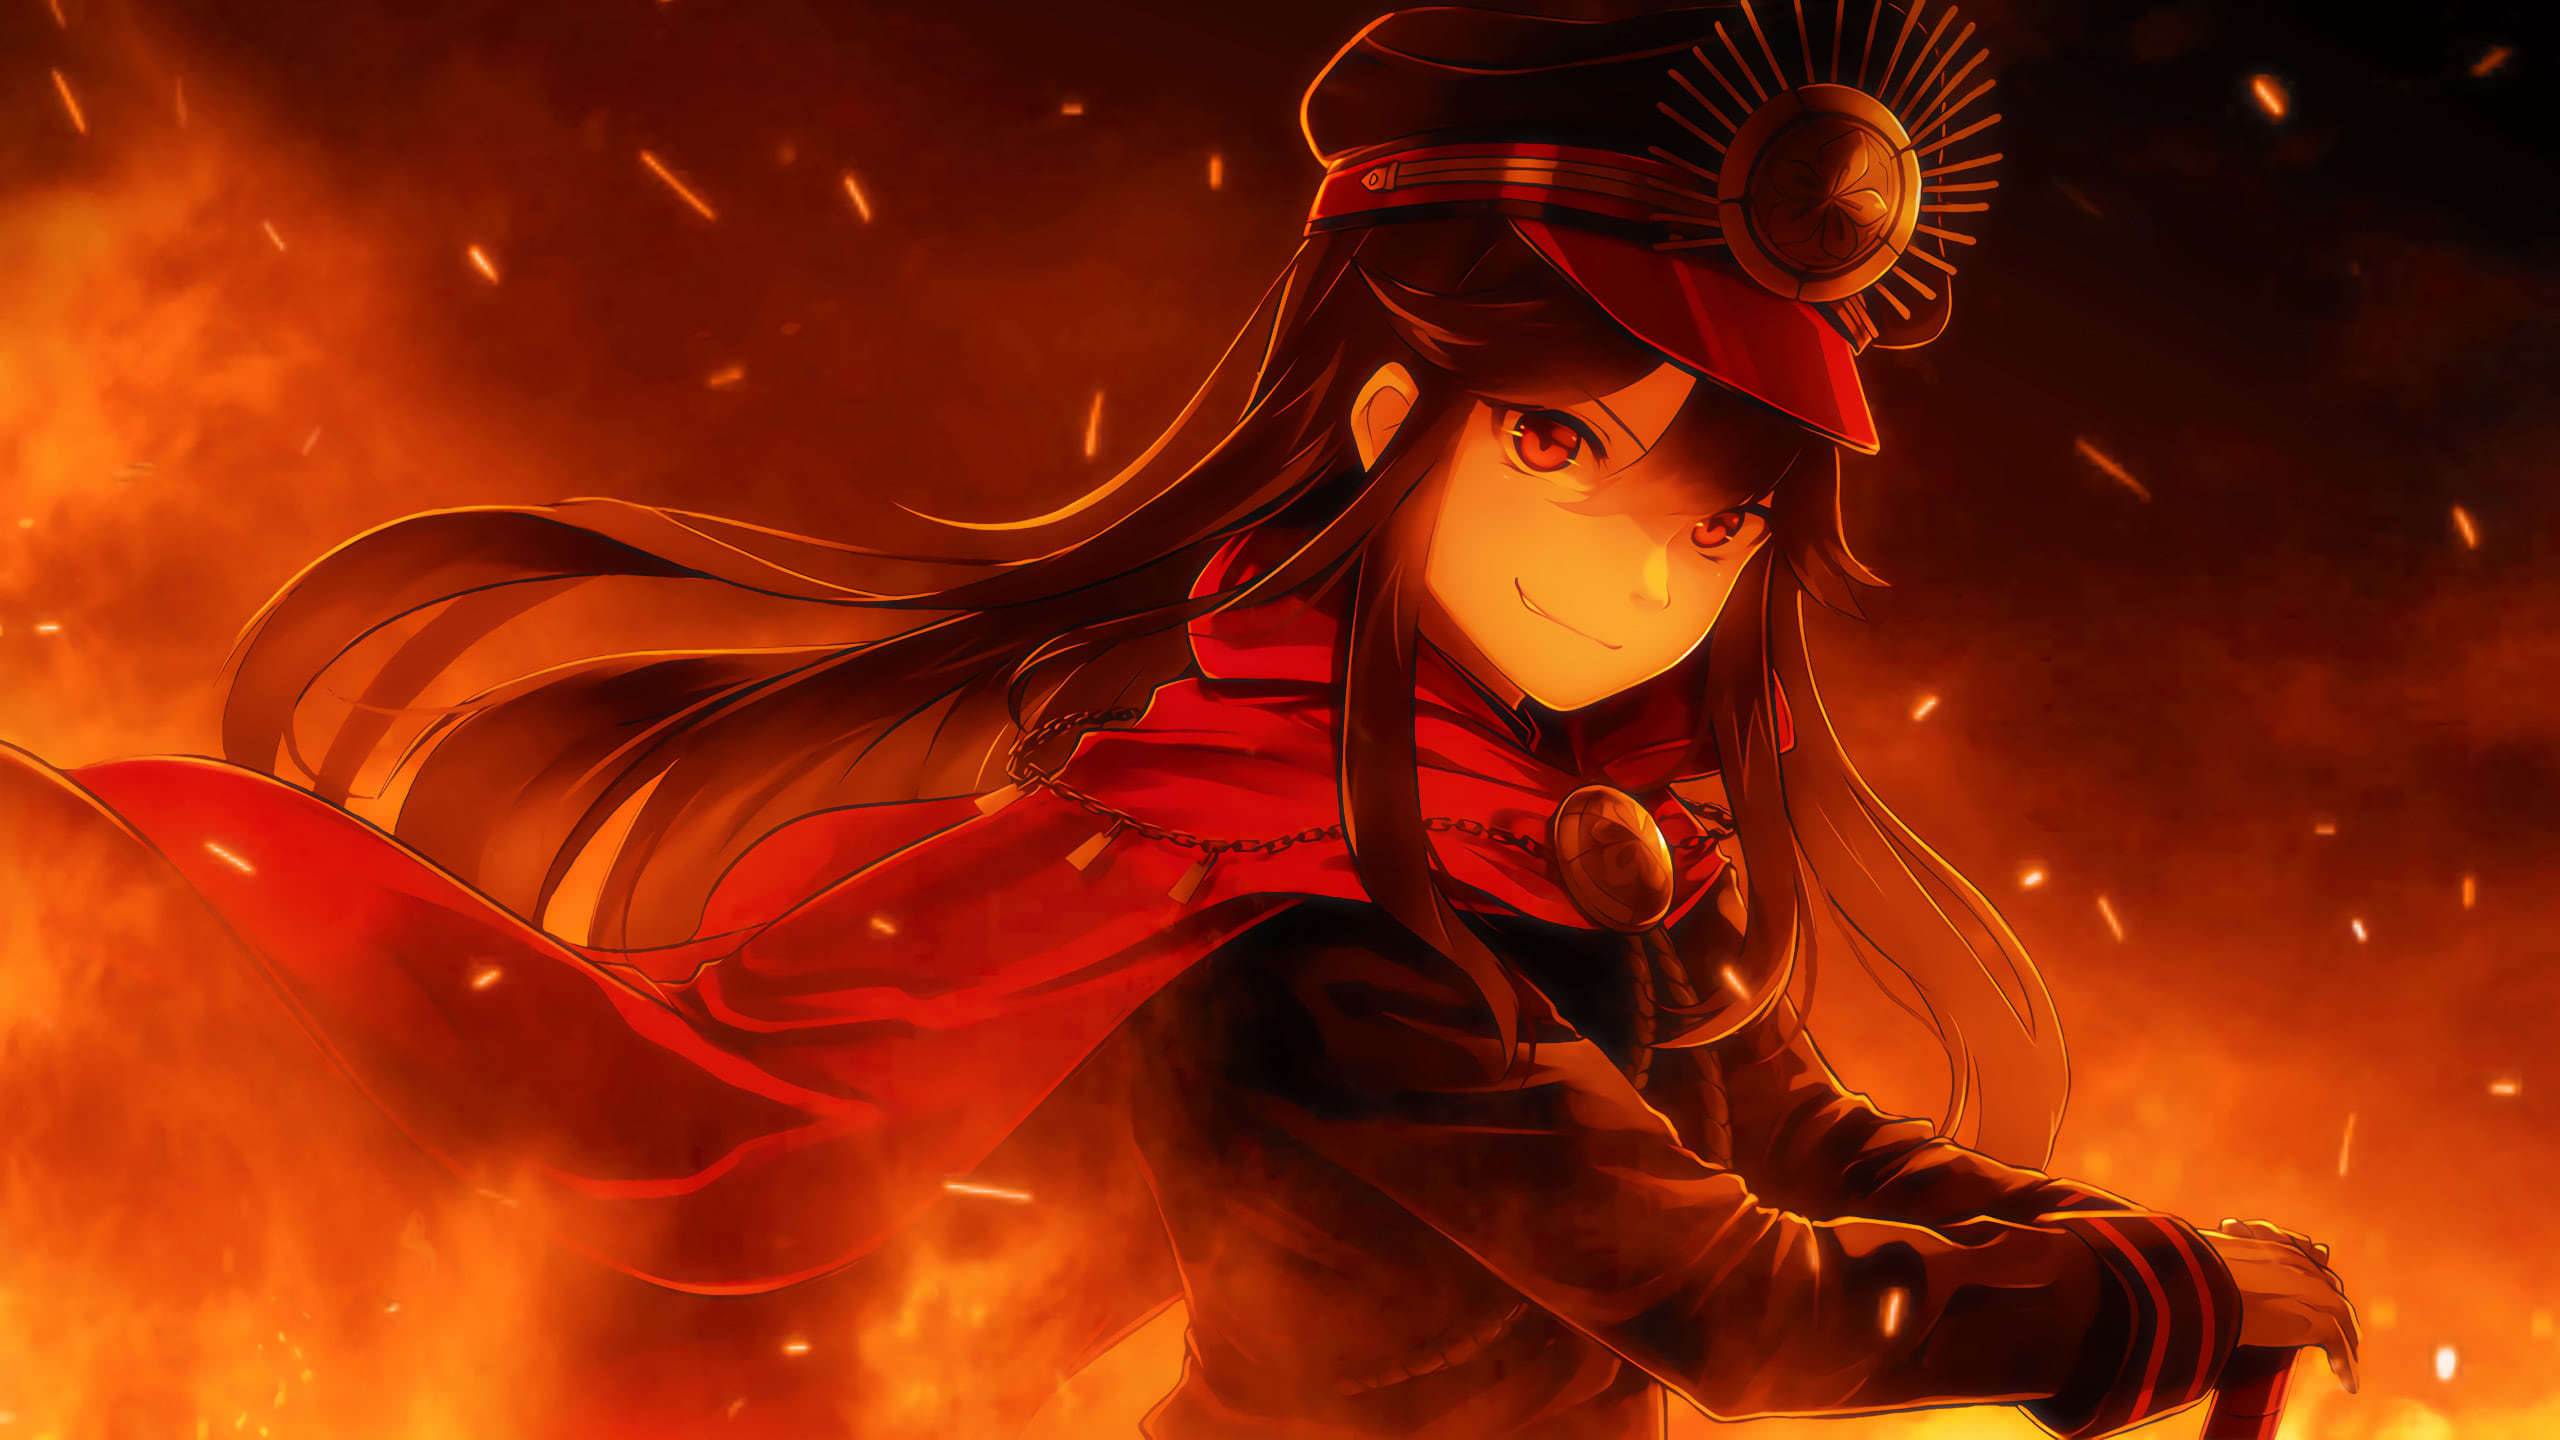 Fategrand Order Oda Nobunaga WQHD 1440P Wallpaper | Pixelz